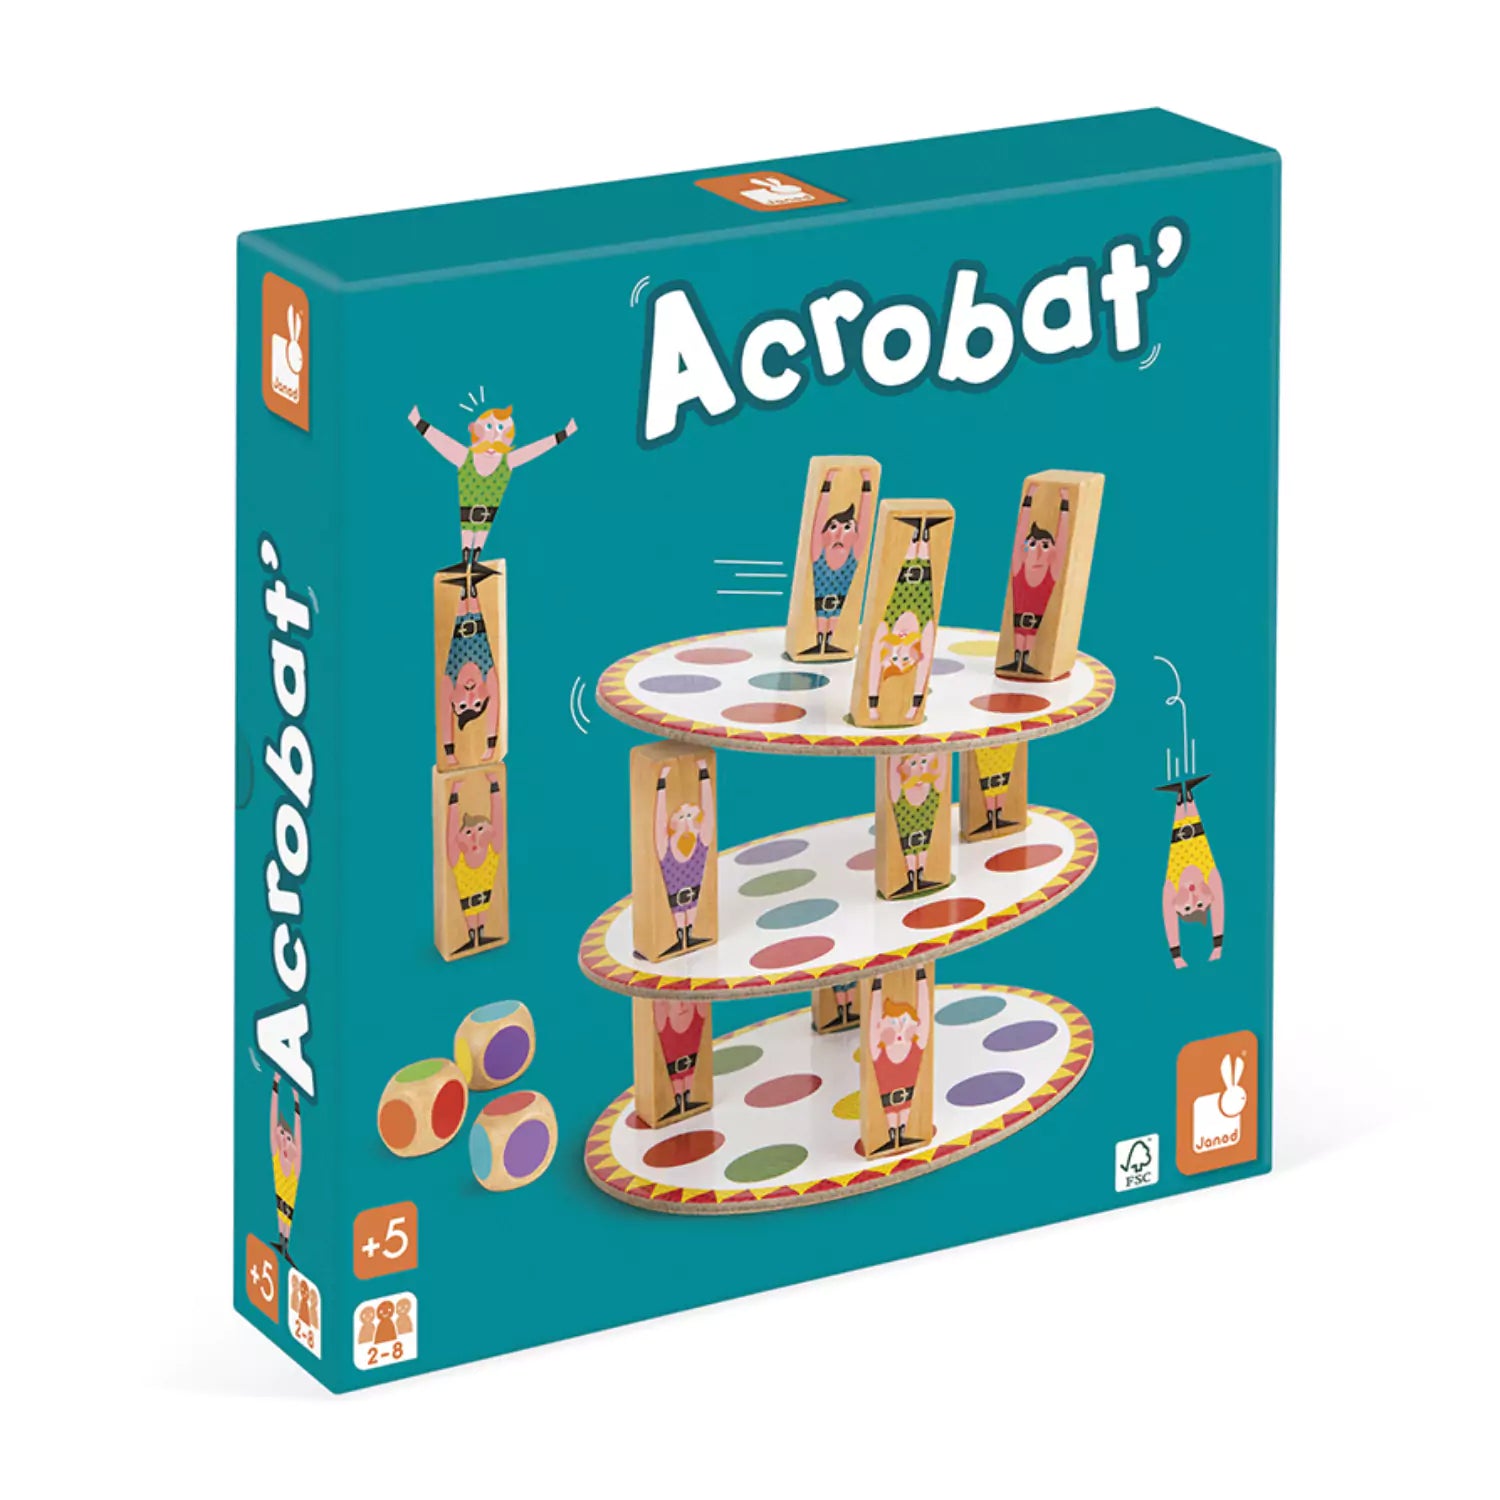 An image of Acrobat' Balancing Game | Buy now